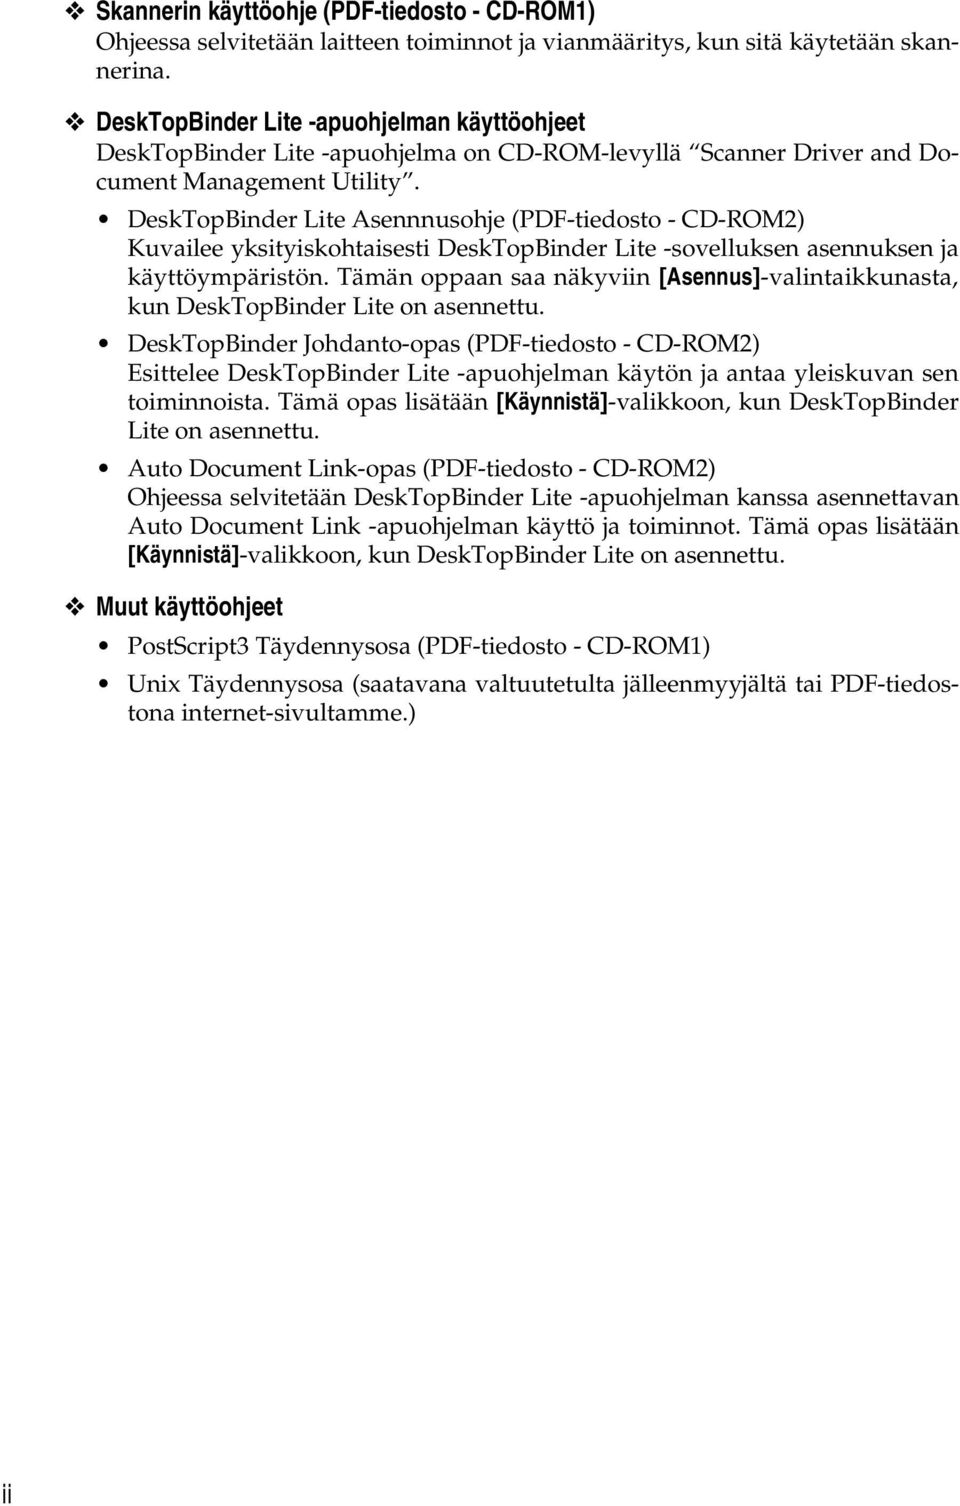 DeskTopBinder Lite Asennnusohje (PDF-tiedosto - CD-ROM2) Kuvailee yksityiskohtaisesti DeskTopBinder Lite -sovelluksen asennuksen ja käyttöympäristön.